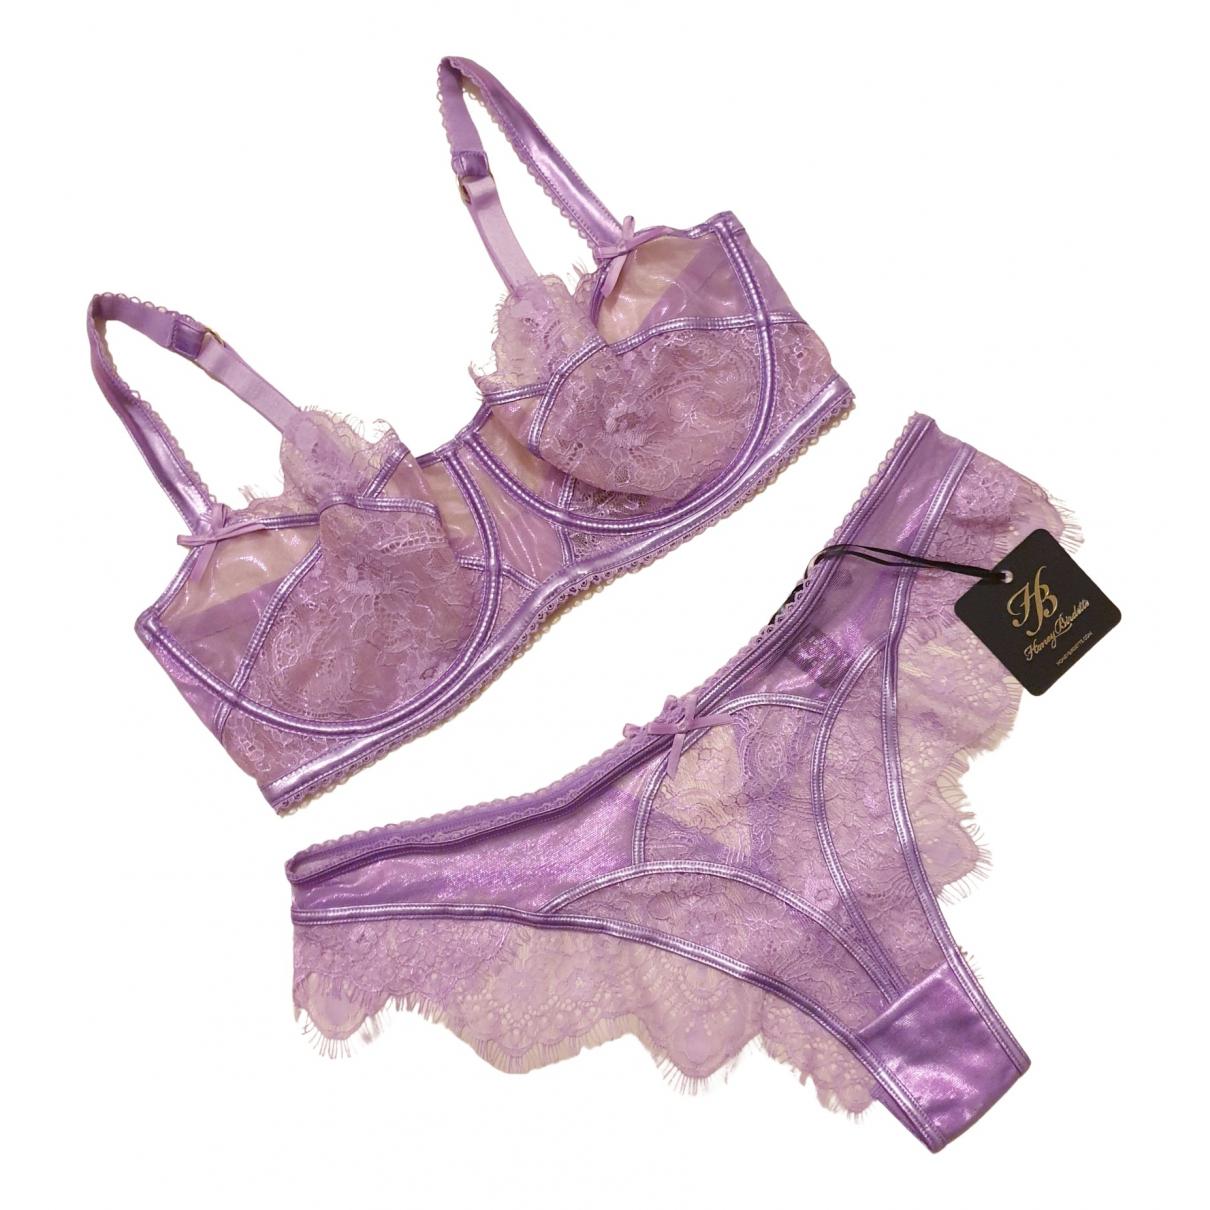 Lace bra Honey Birdette Purple in Lace - 39856467